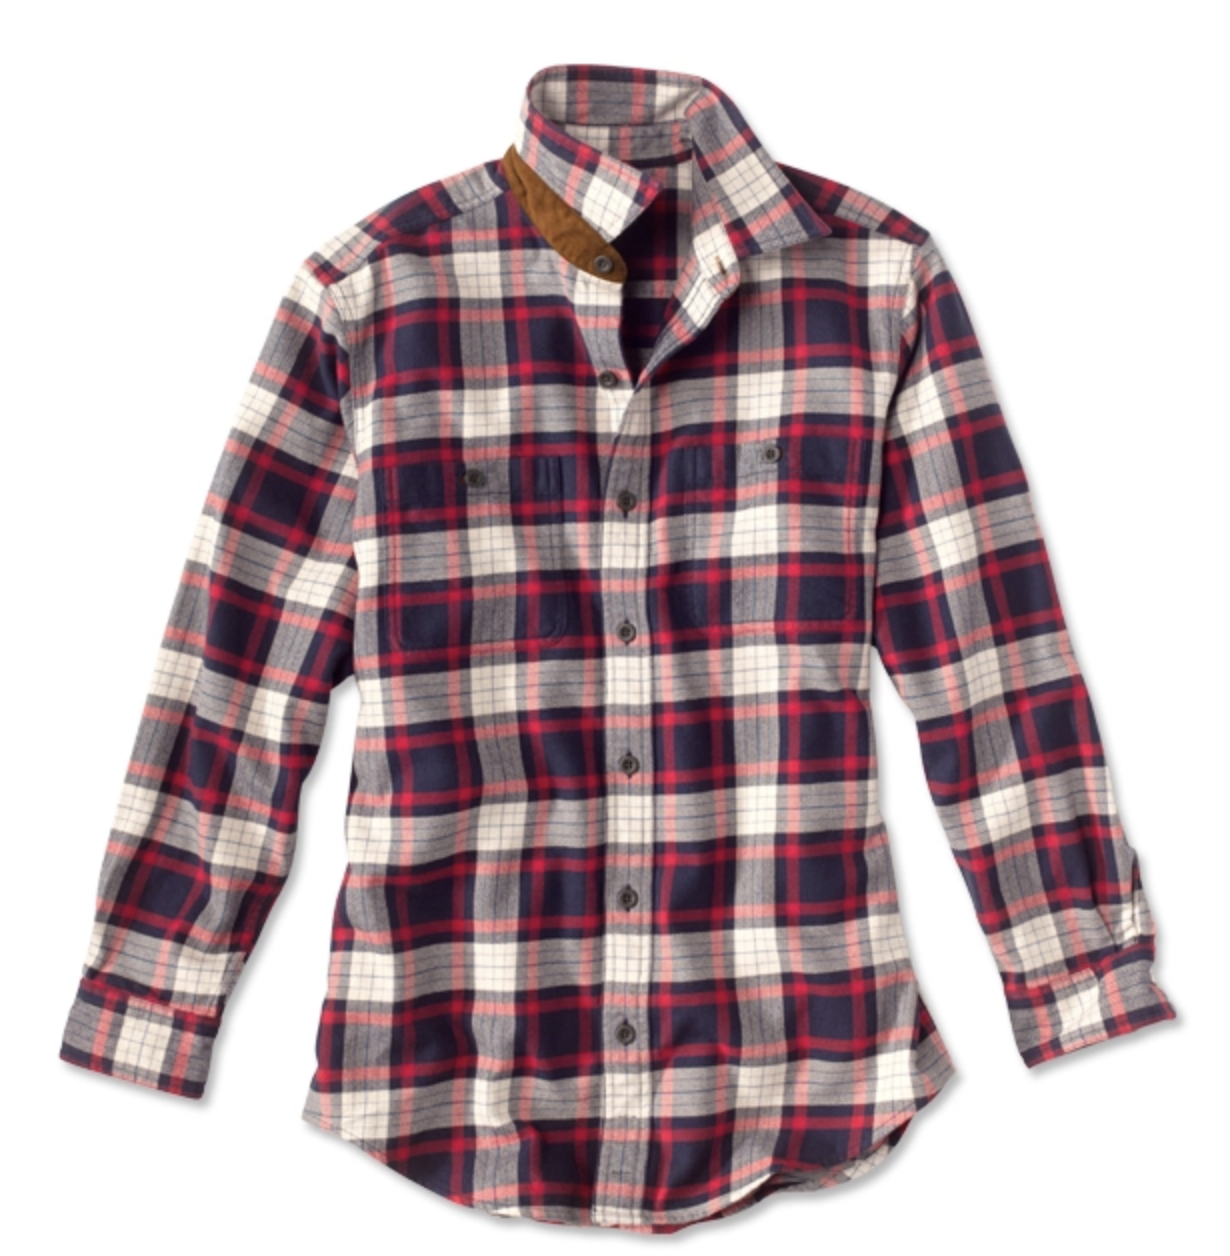 https://cdn.shoplightspeed.com/shops/632563/files/29456884/orvis-perfect-flannel-shirt.jpg